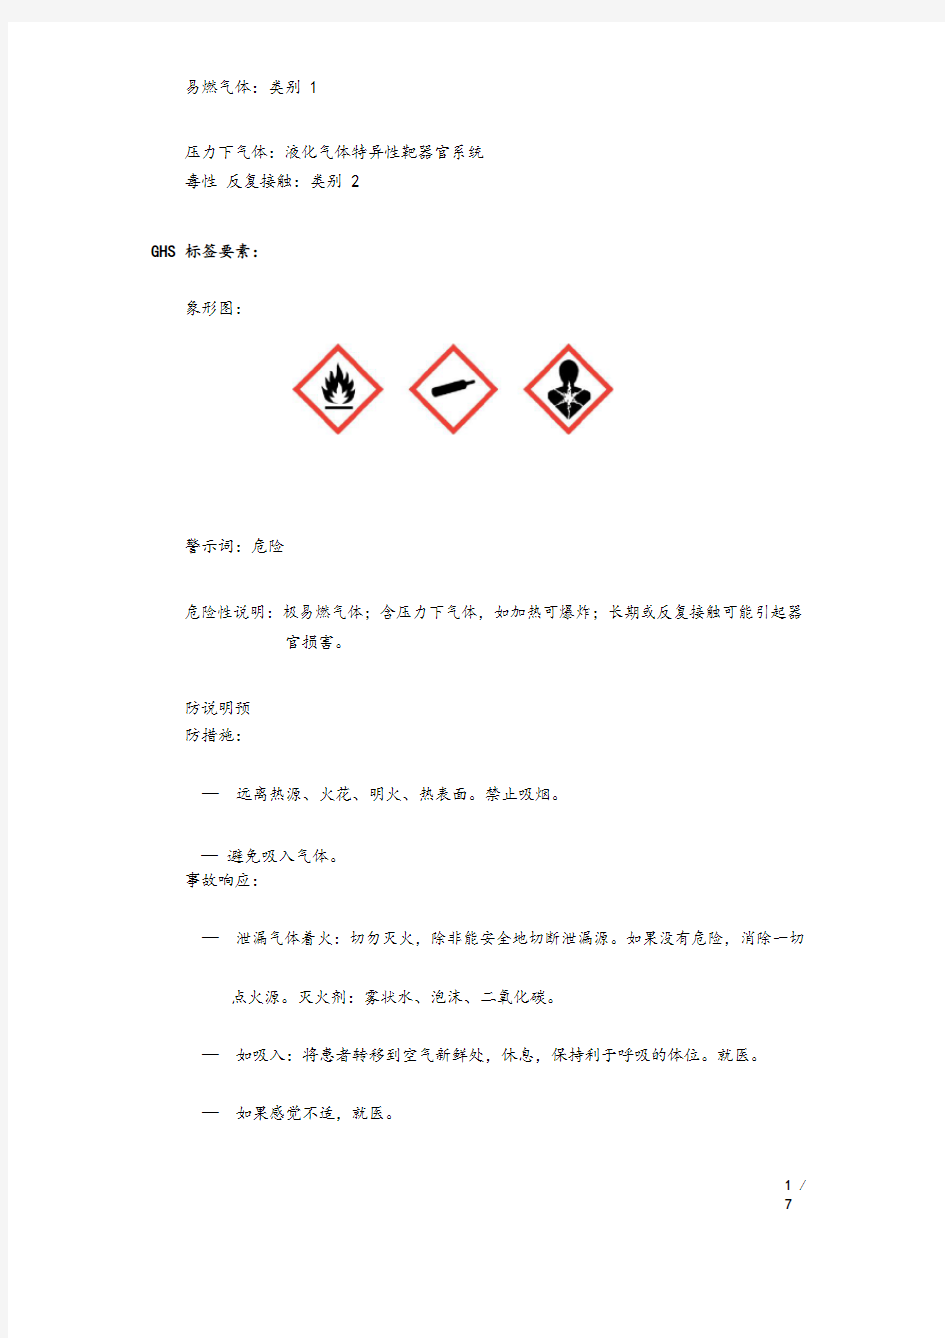 氯甲烷化学品安全系统技术说明书